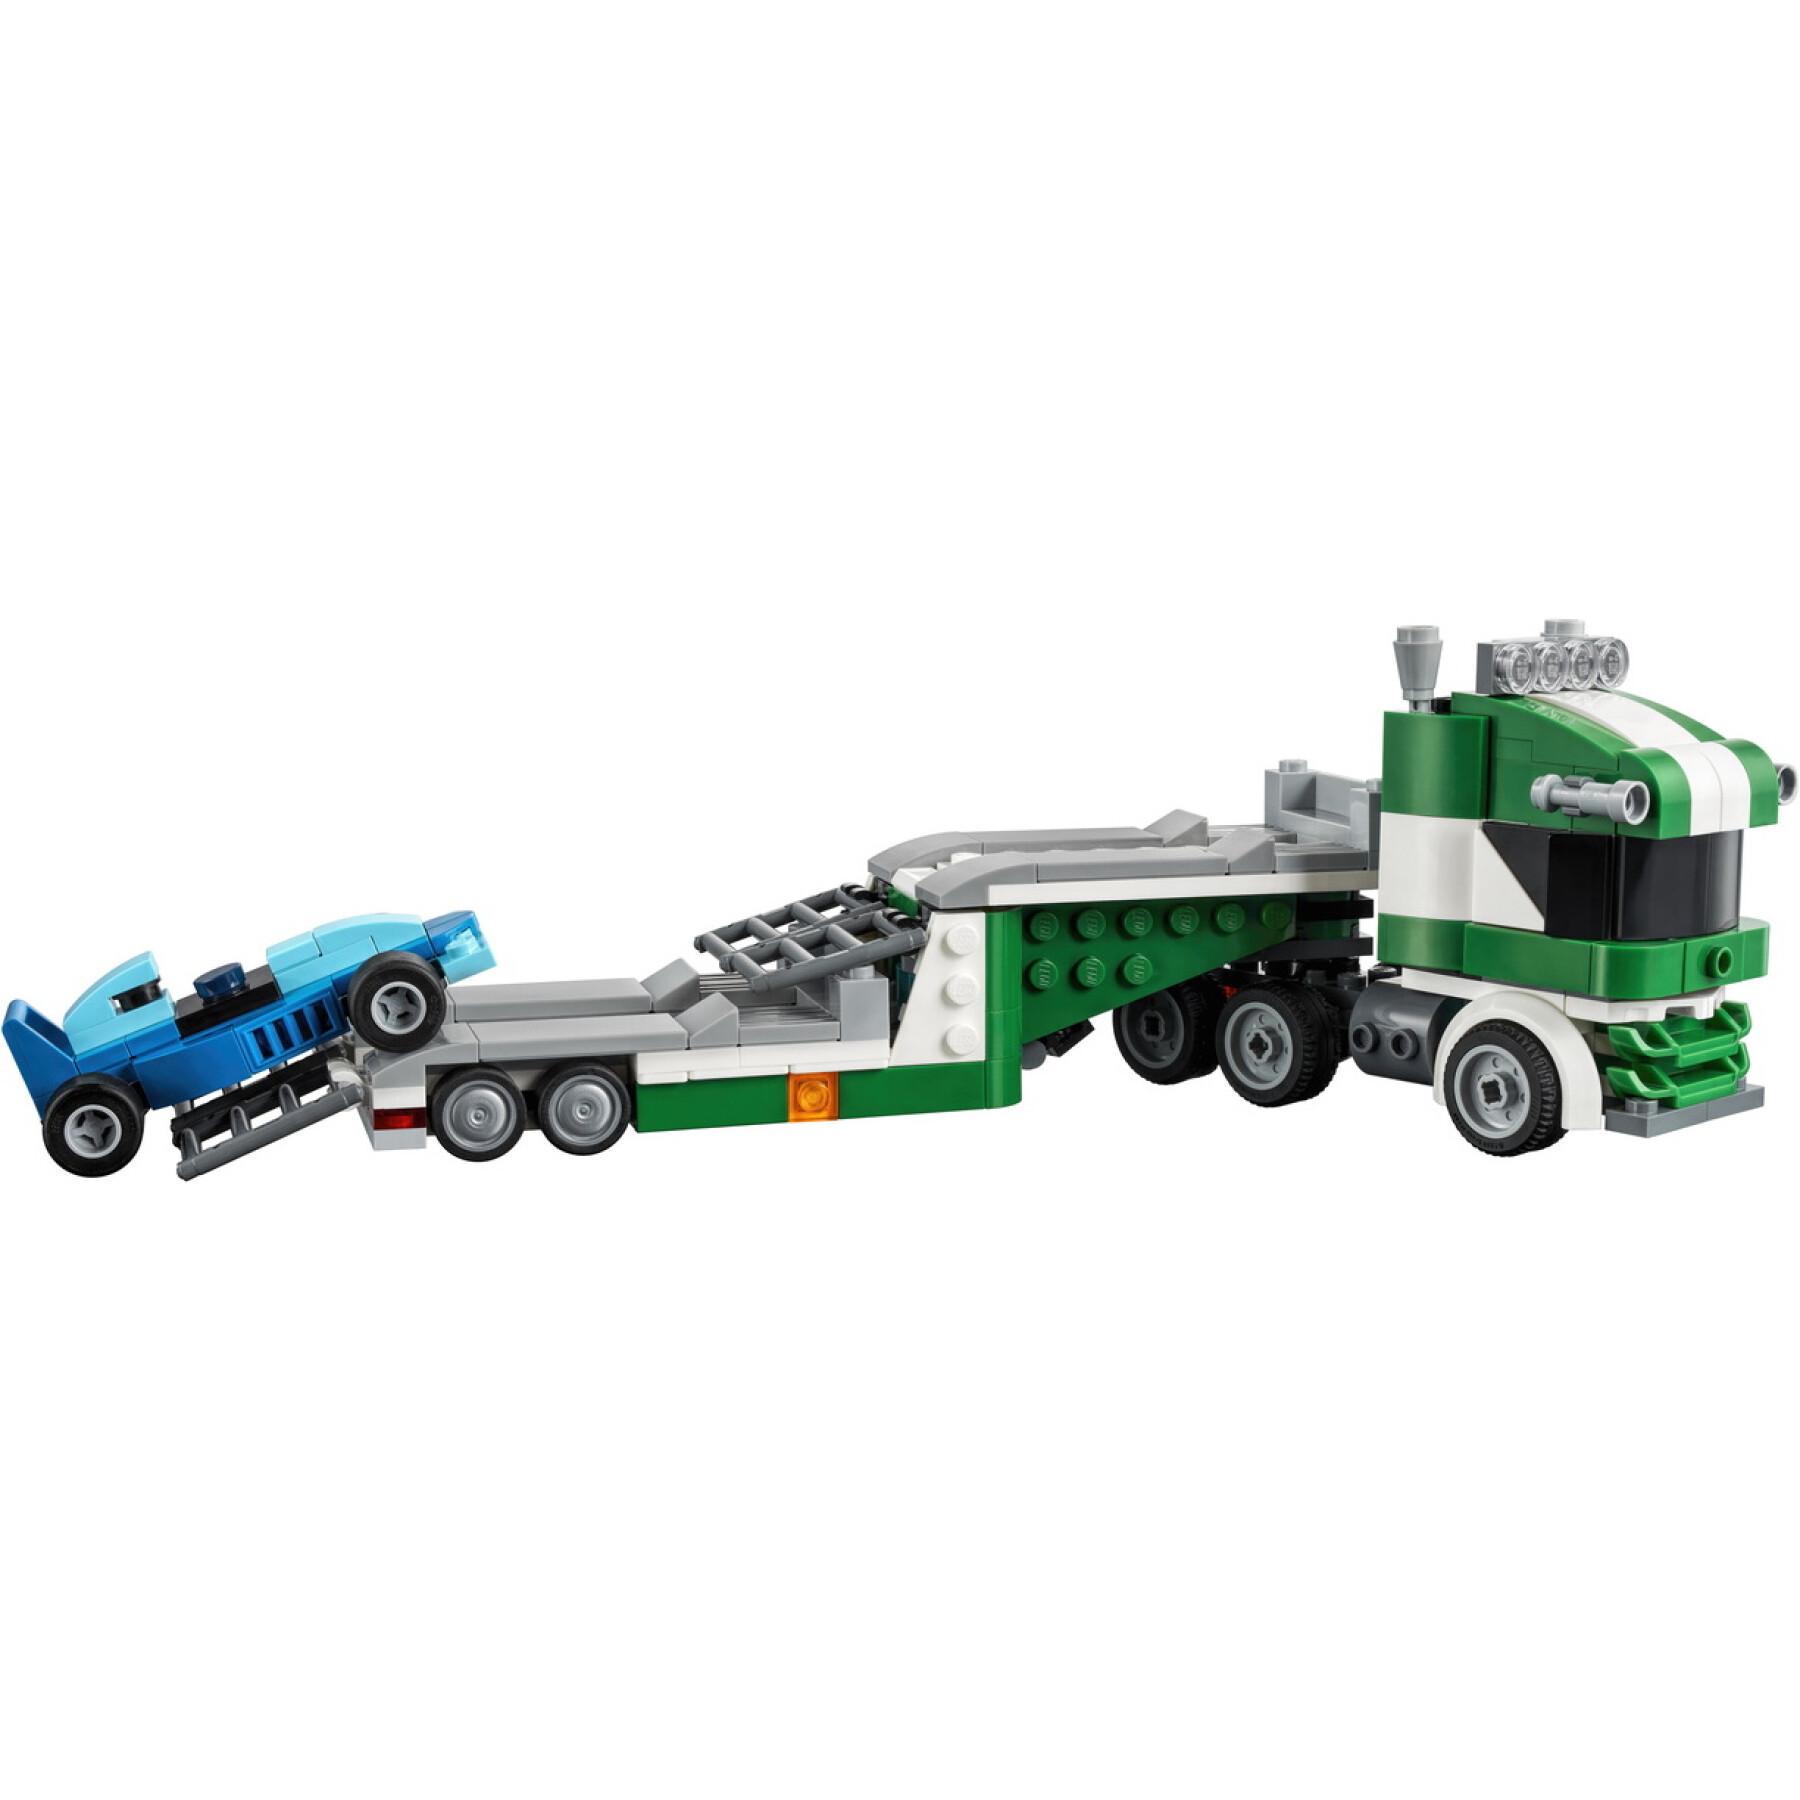 Transportador de veículos de corrida Lego Creator